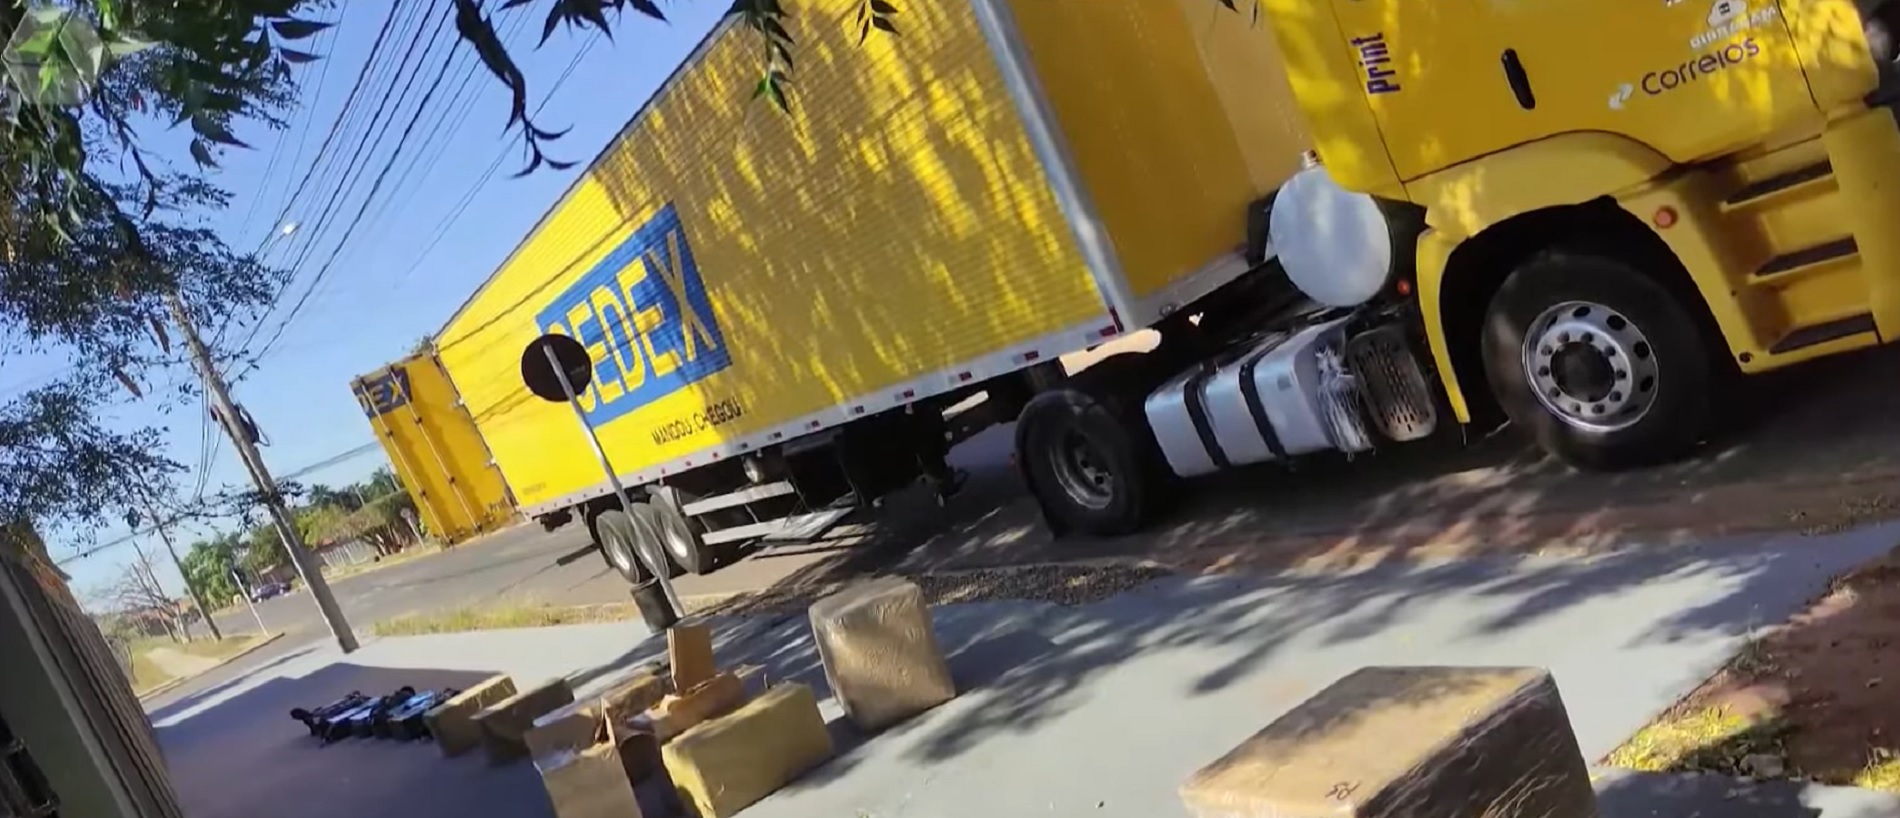 Caminhão dos correios é flagrado com mercadoria contrabandeada em Mato Grosso do Sul